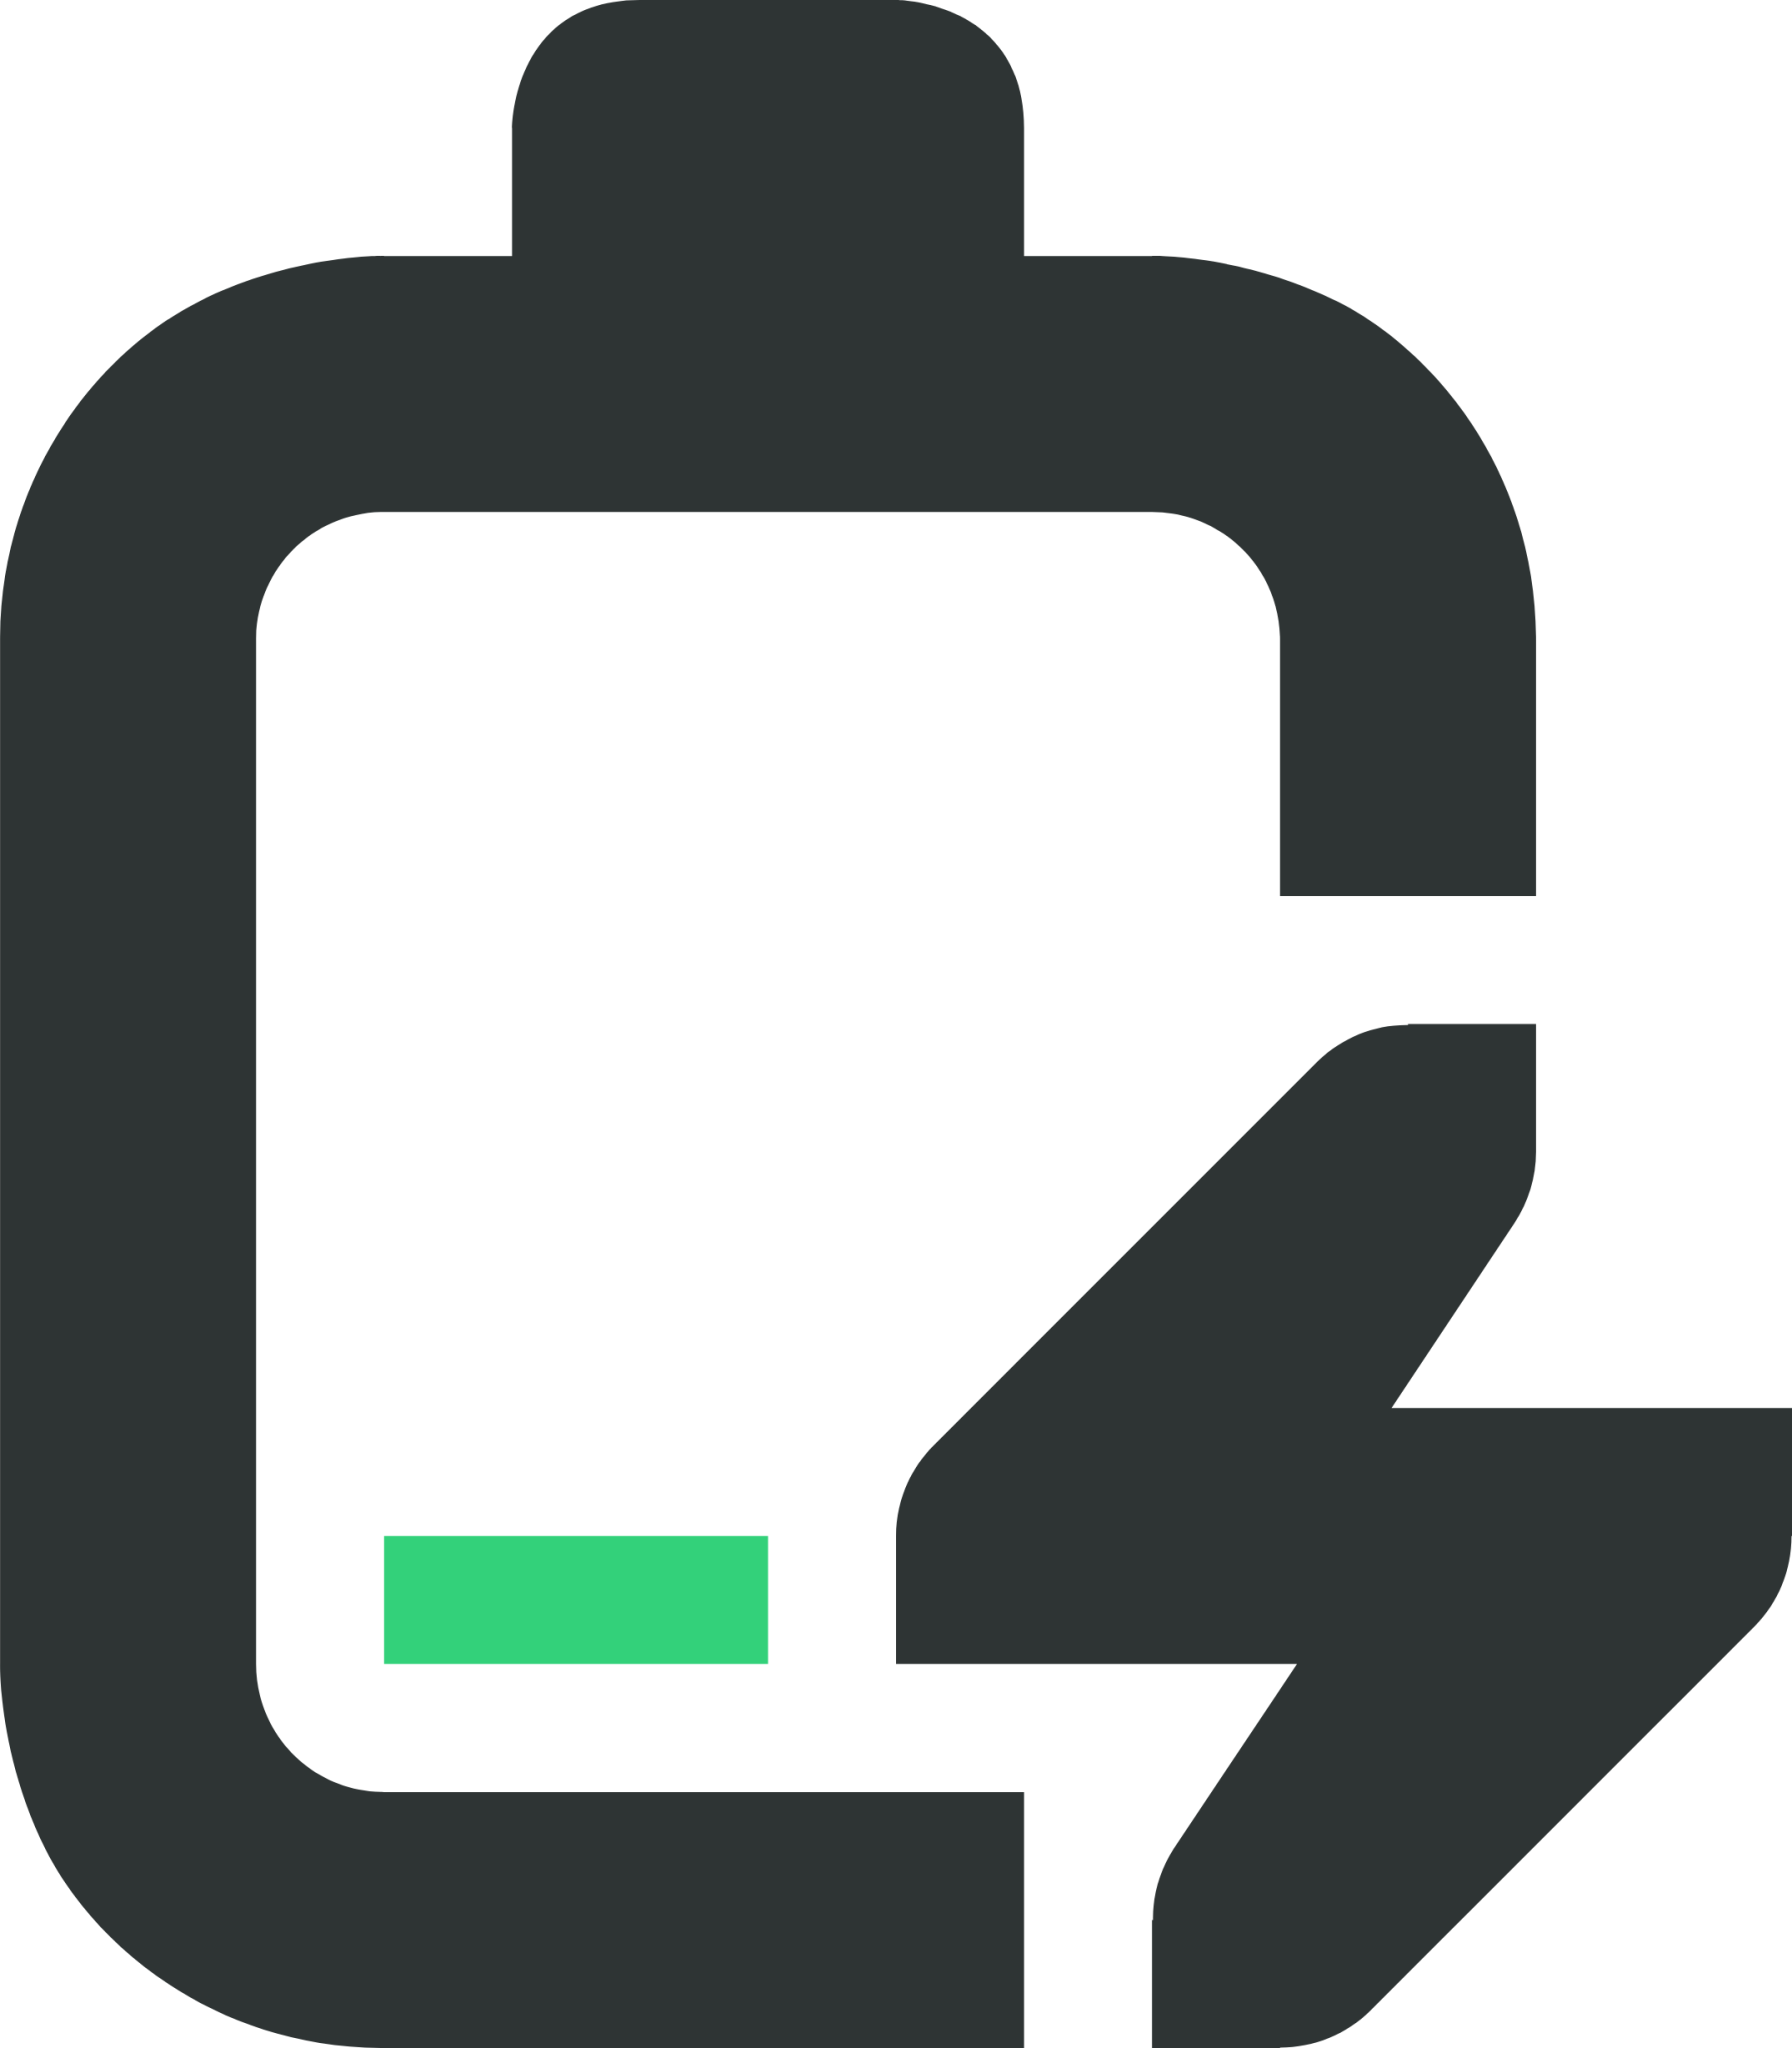 battery level 10 charging symbolic icon